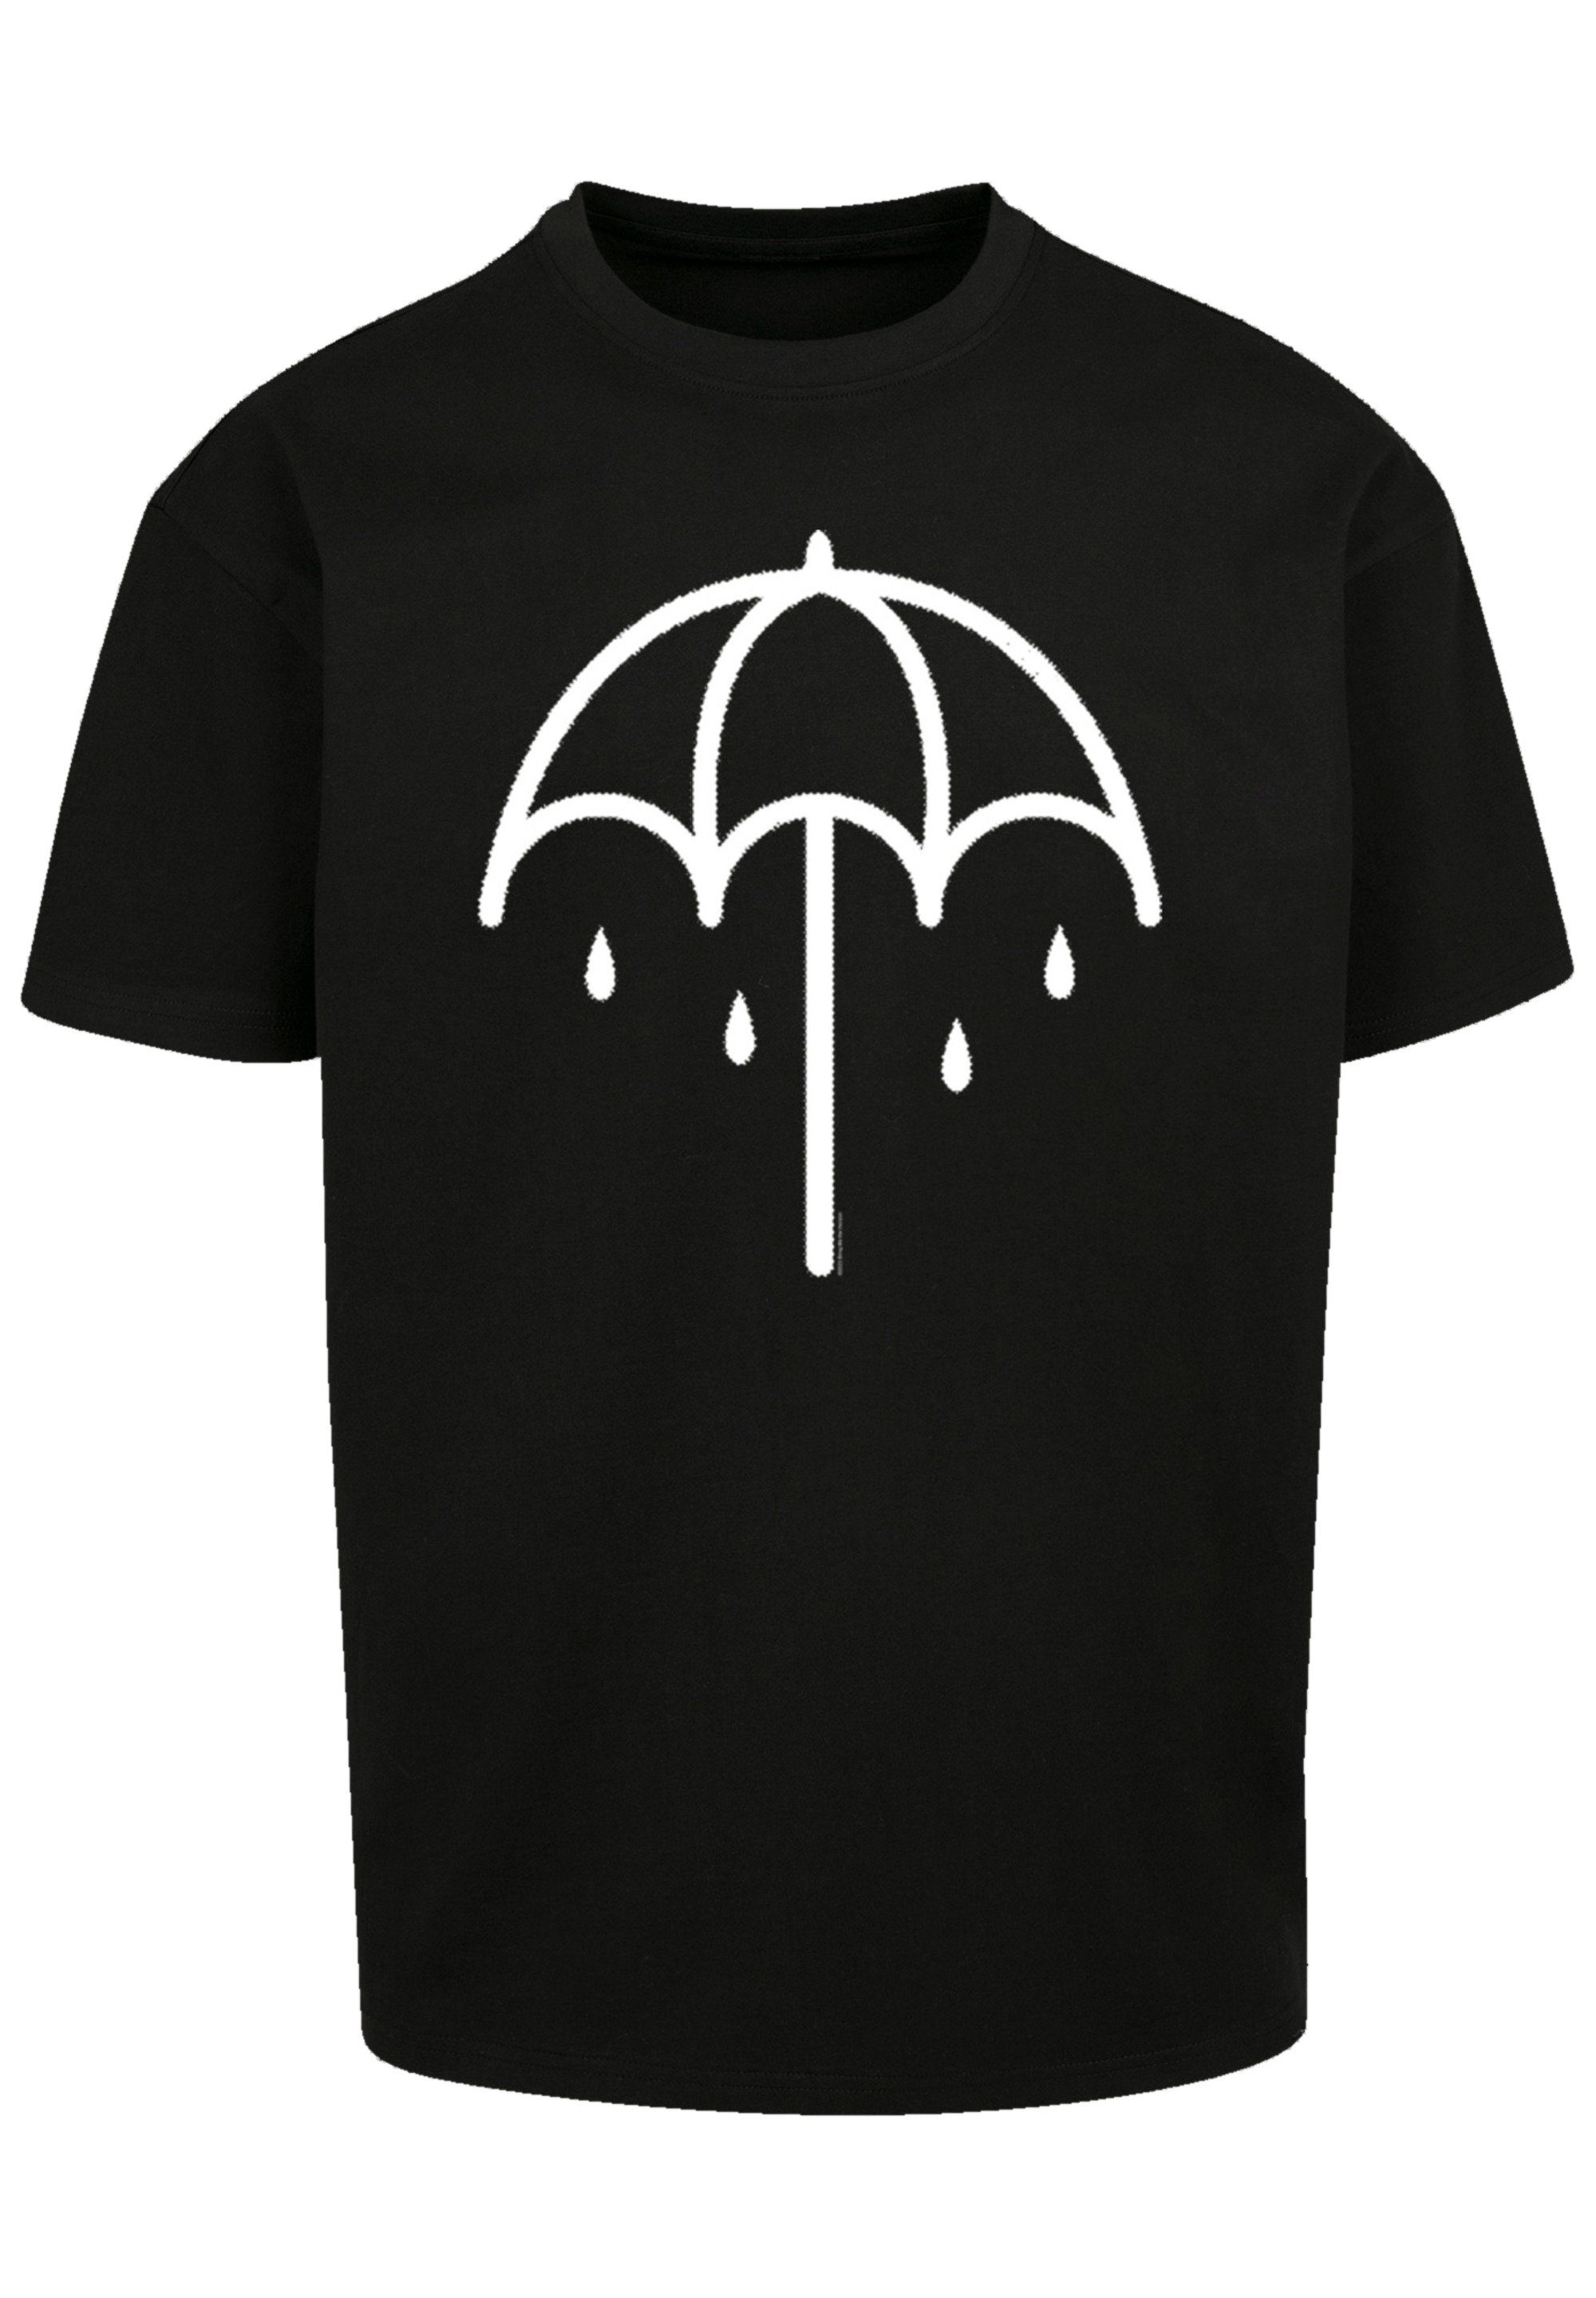 Premium F4NT4STIC Band DARK Rock-Musik, BMTH Band Metal T-Shirt Qualität, Umbrella 2 schwarz